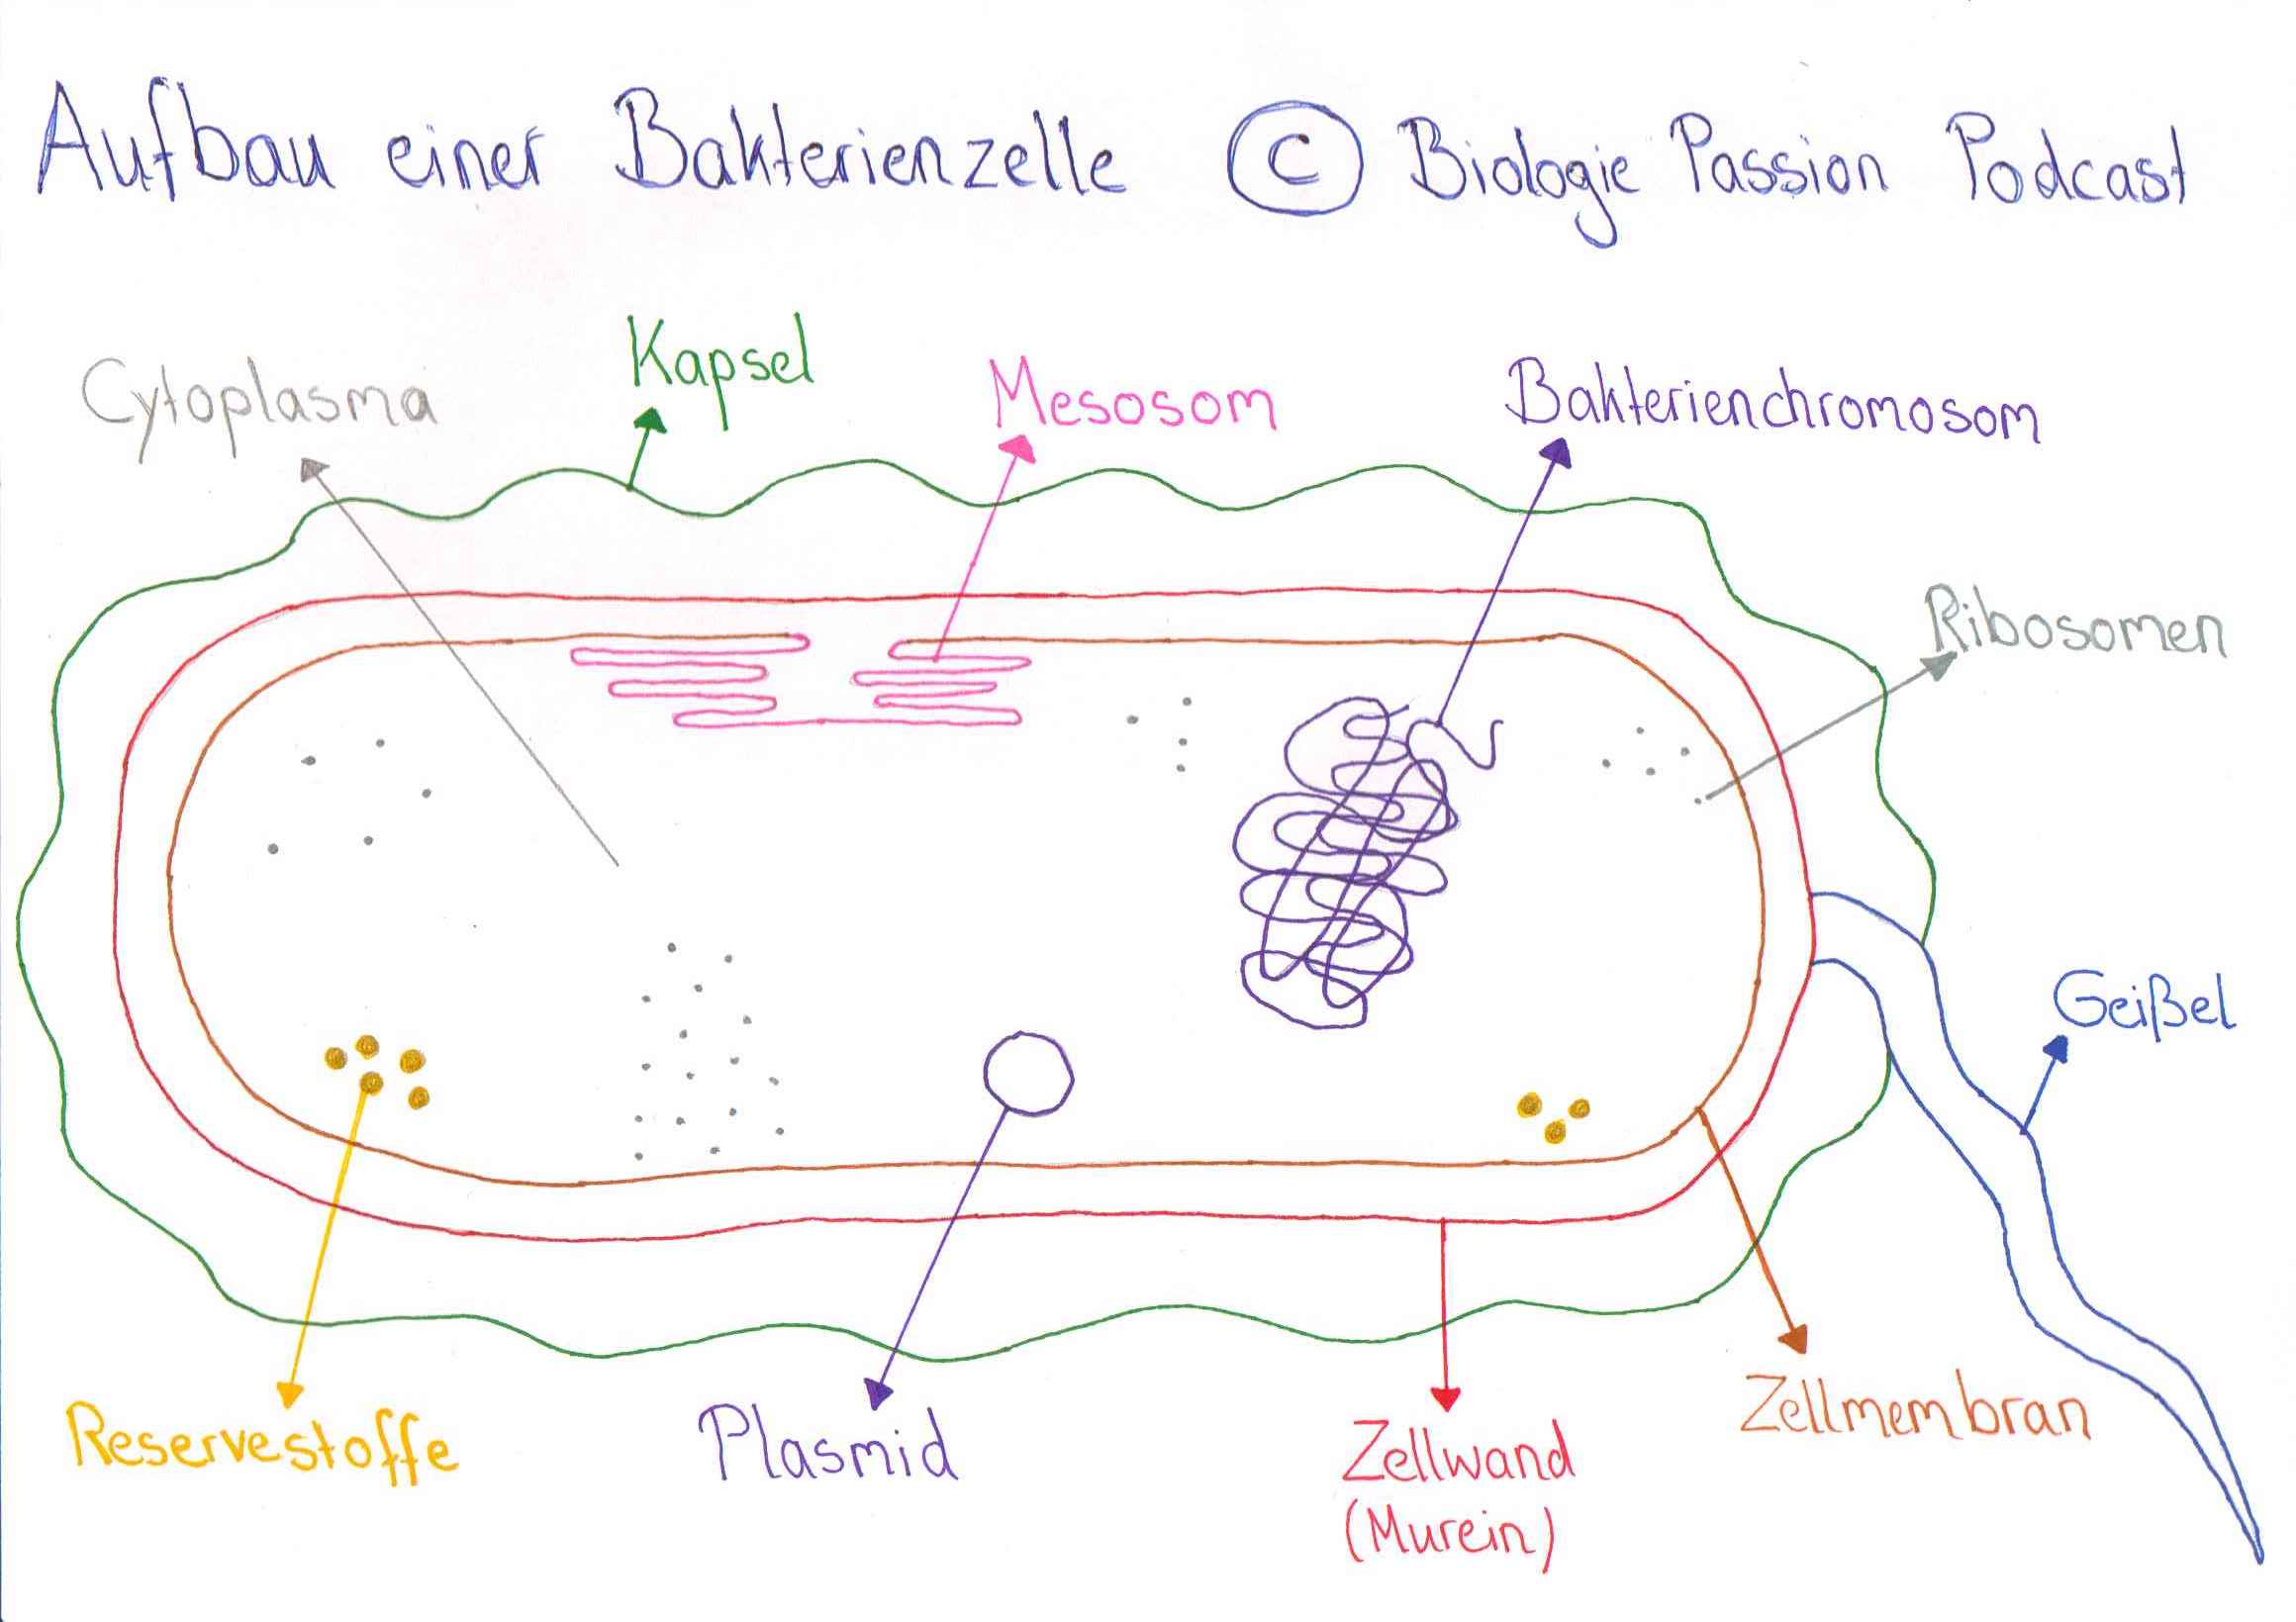 Aufbau einer Bakterienzelle / Bakterien - Biologie Passion Podcast